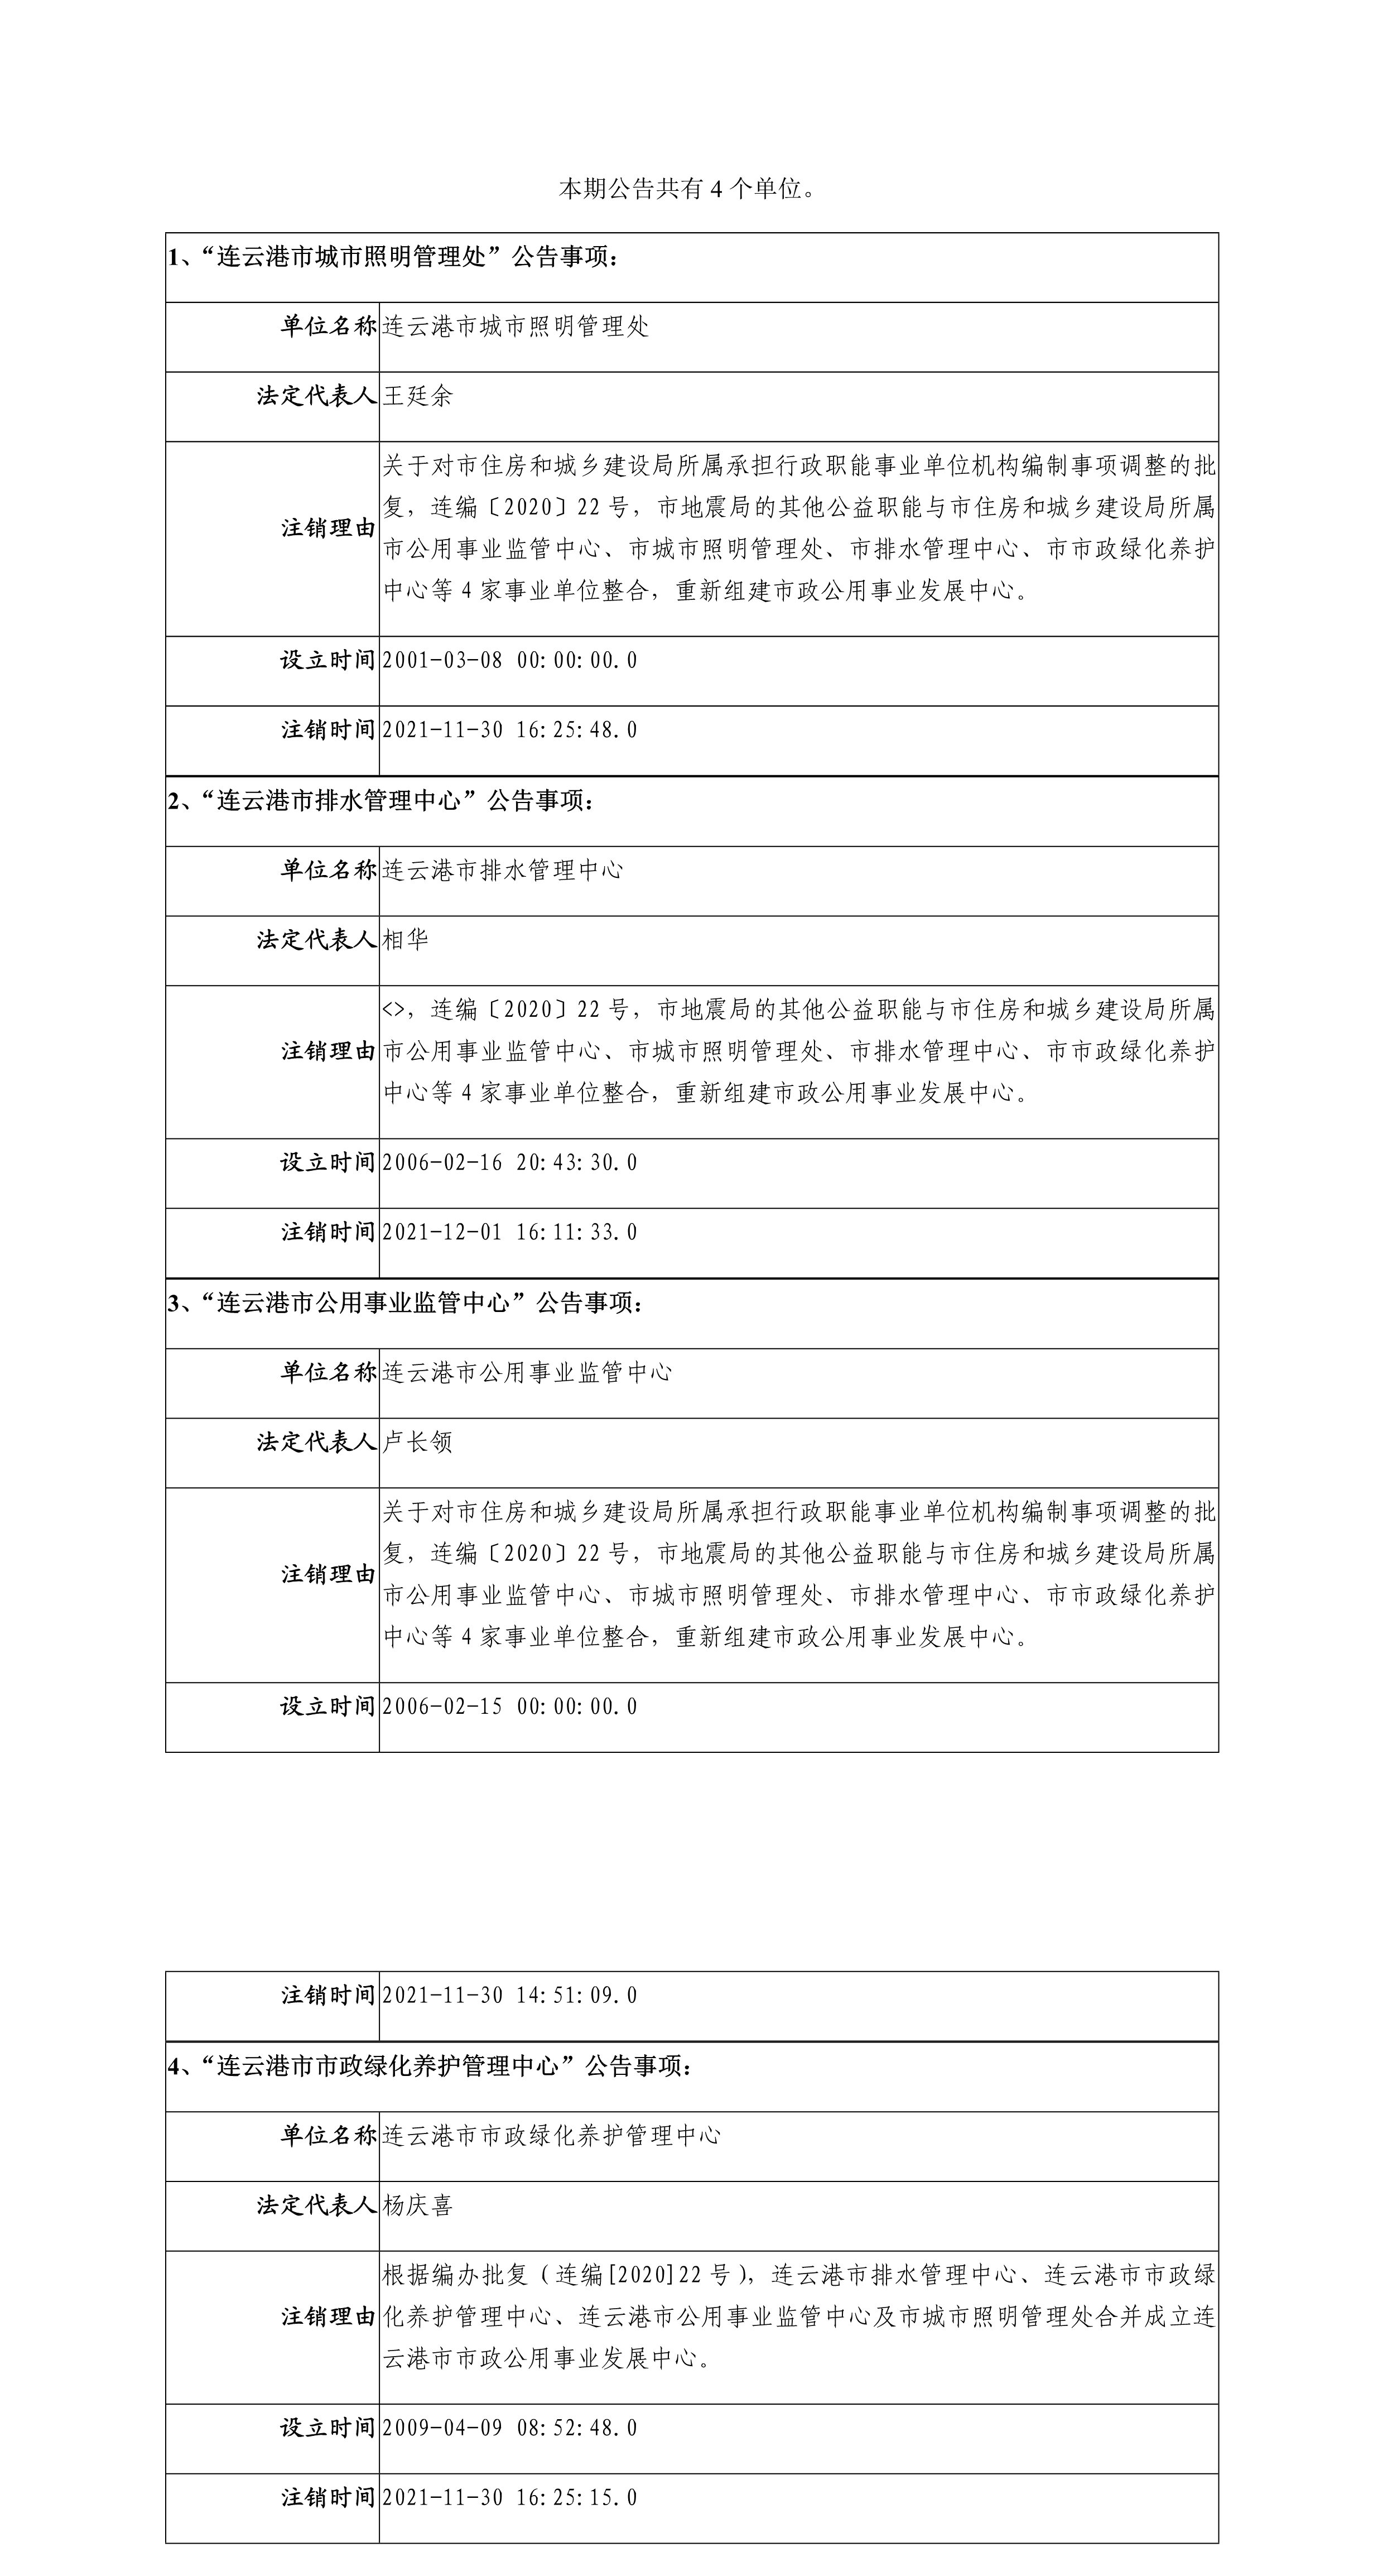 连云港市城市照明管理处等四家单位注销登记的公告_1.png